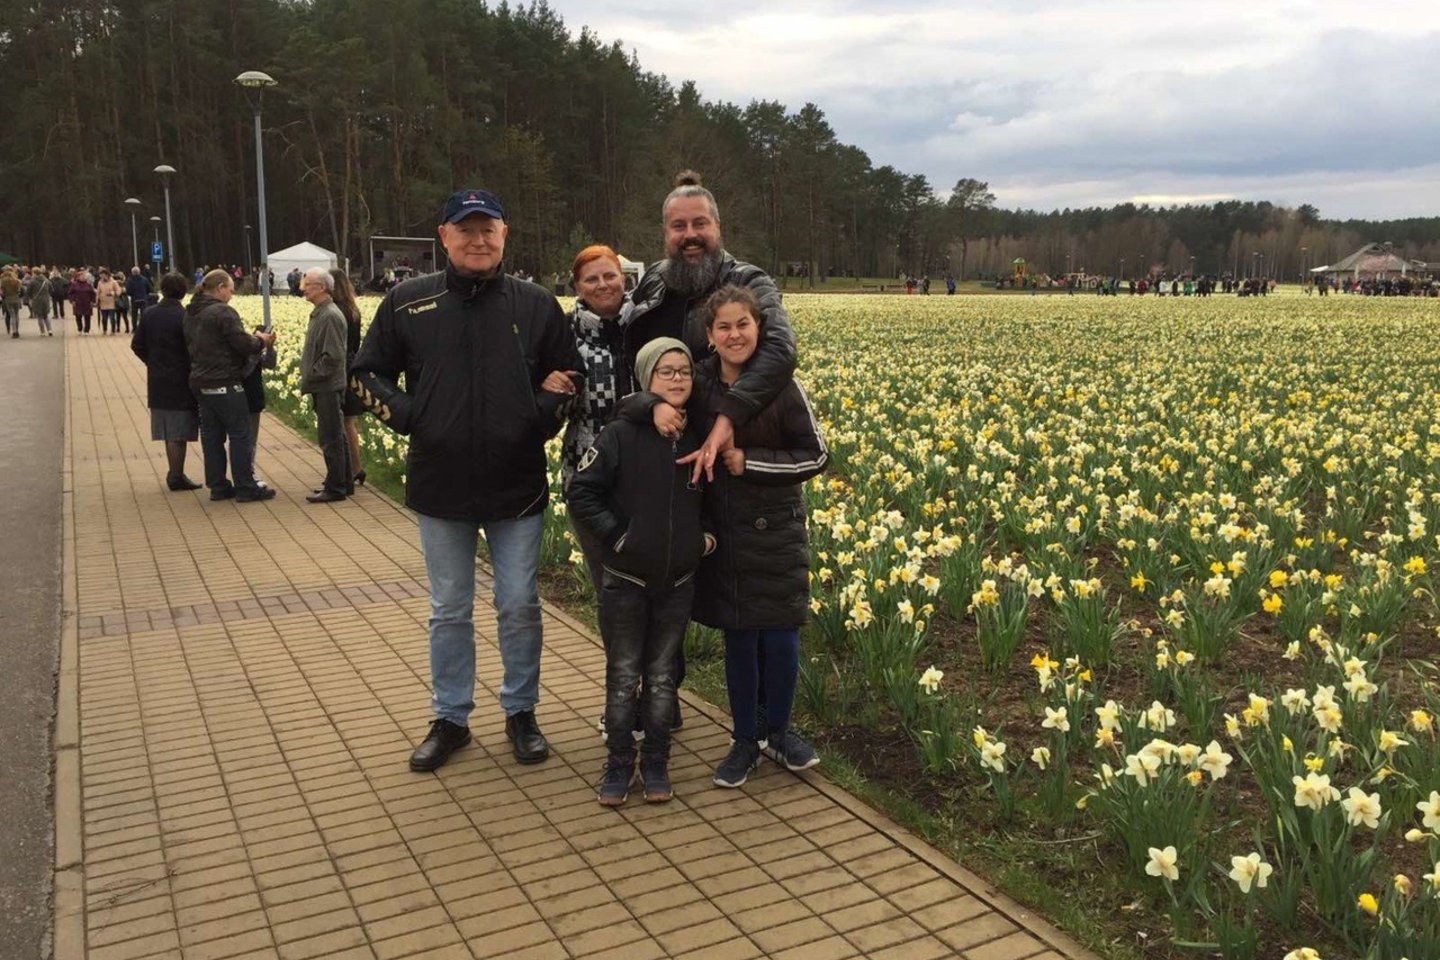  Valdemaras ir Vita Novickiai su sūnumi Tomu ir jo vaikais Mija ir Jonu.<br> A.Pliadžio ir asmeninio archyvo nuotr.